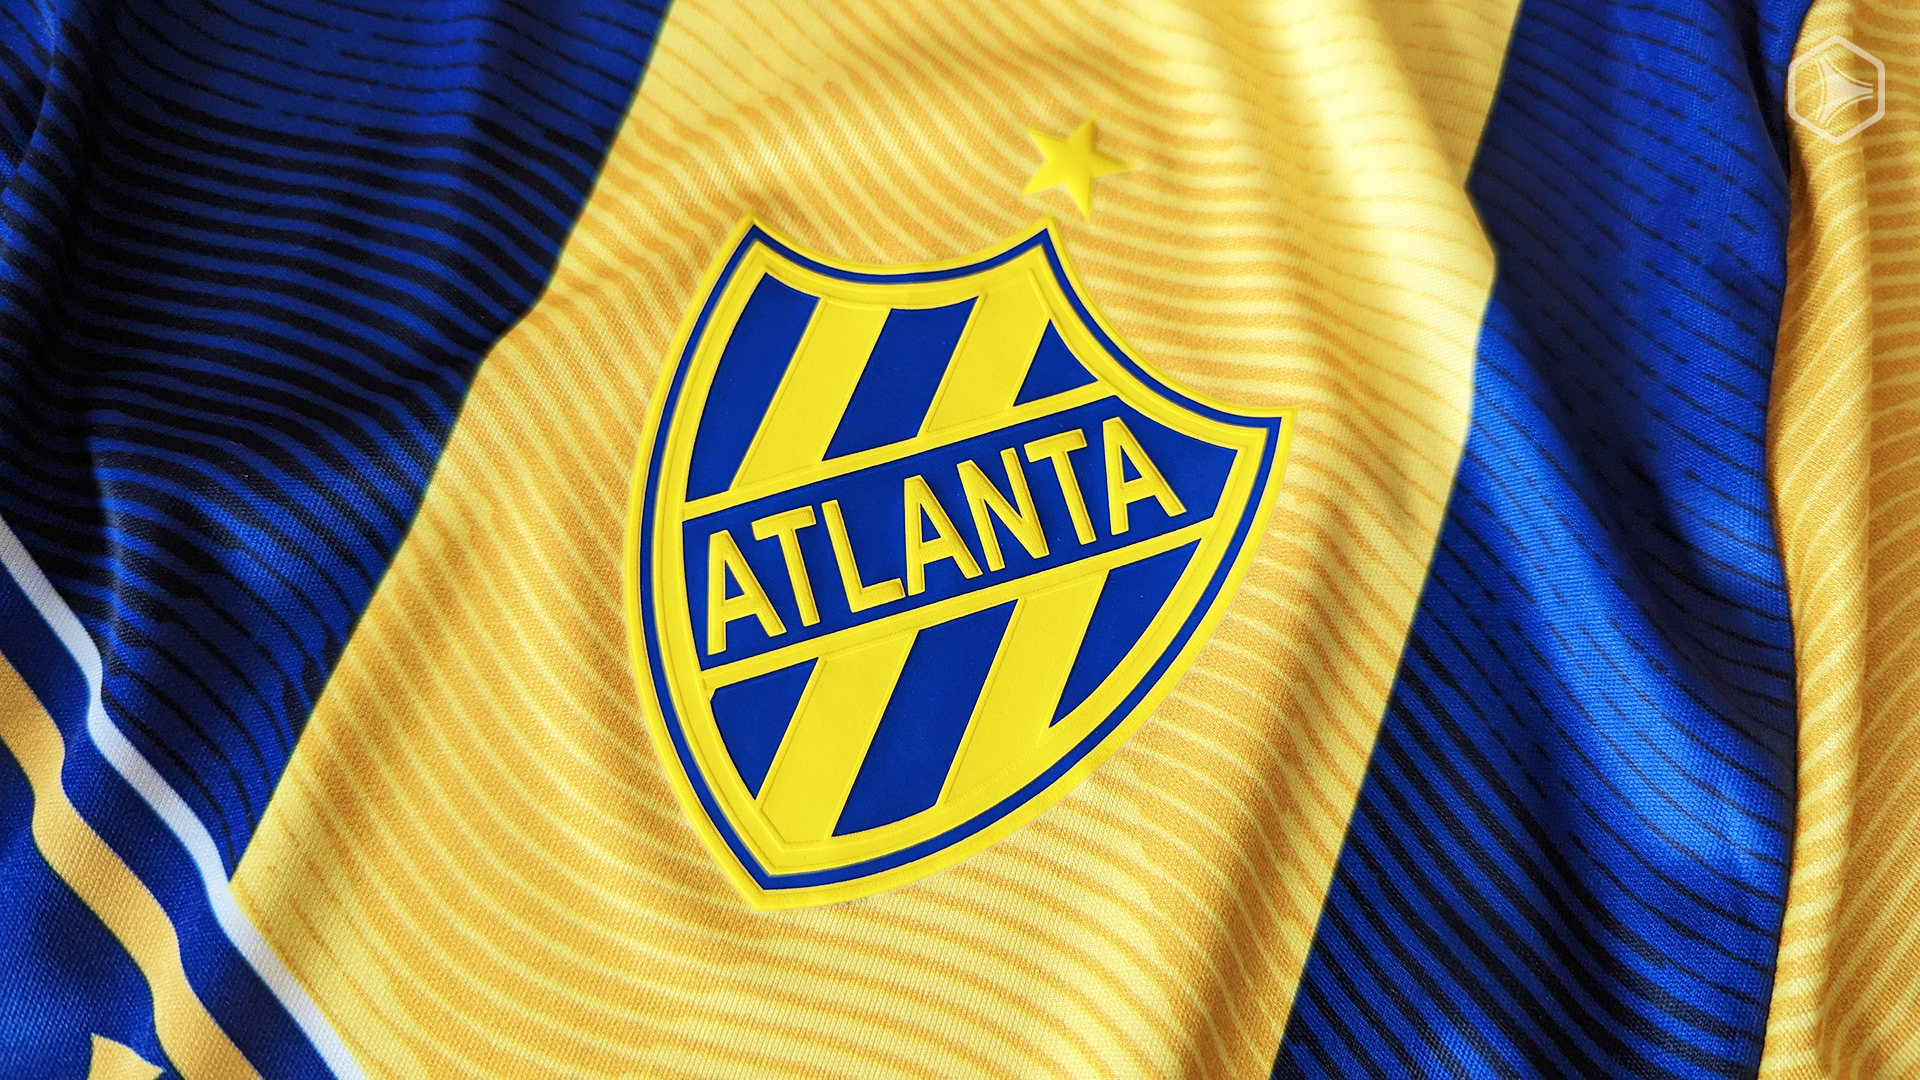 Club Atlético Atlanta